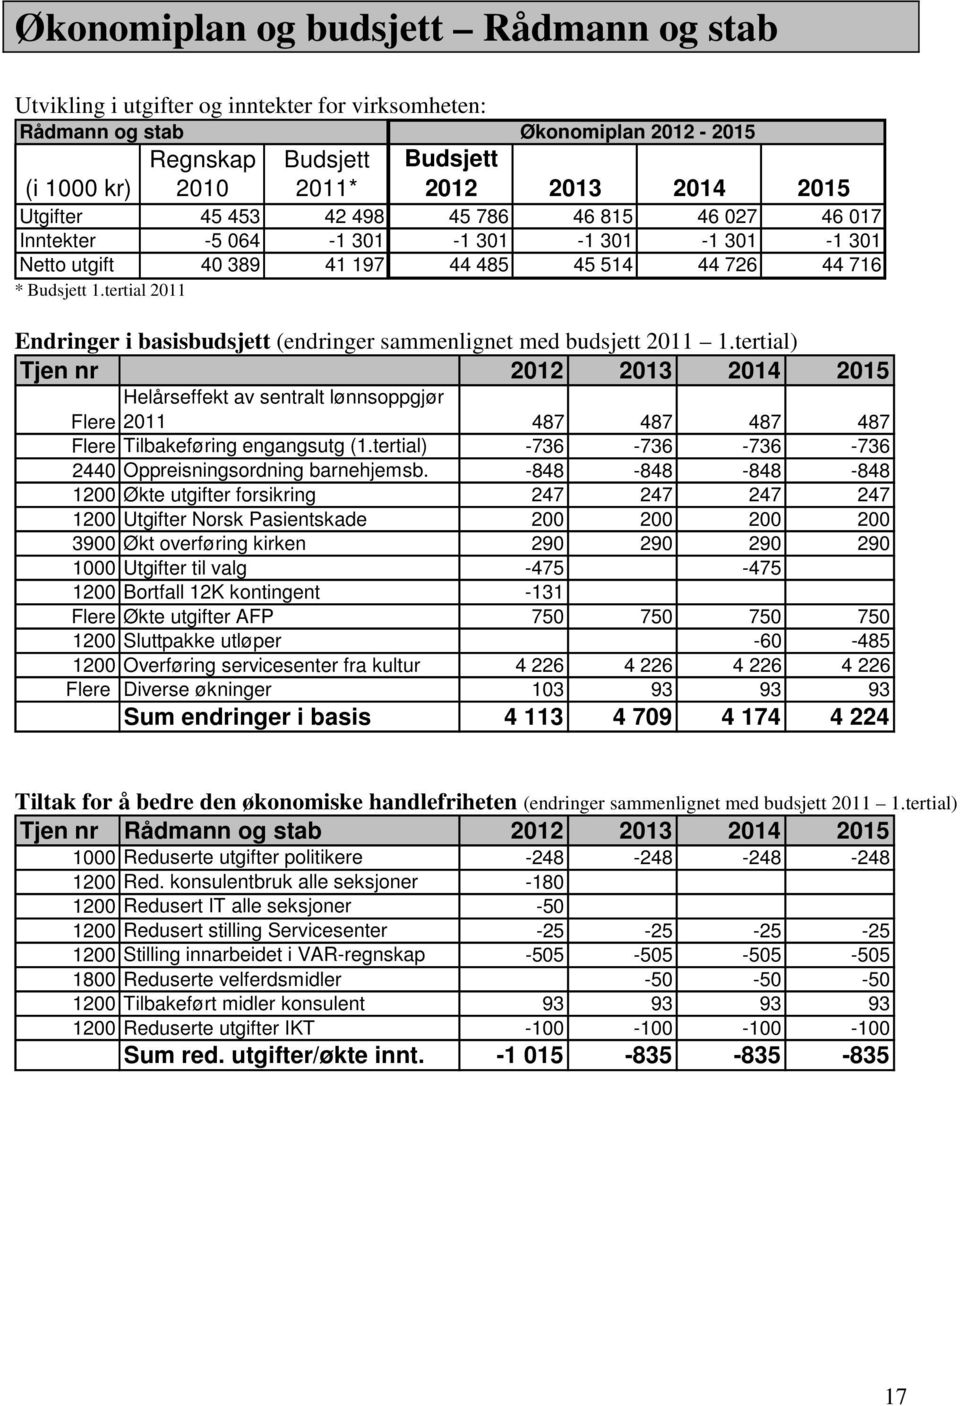 tertial 2011 Endringer i basisbudsjett (endringer sammenlignet med budsjett 2011 1.